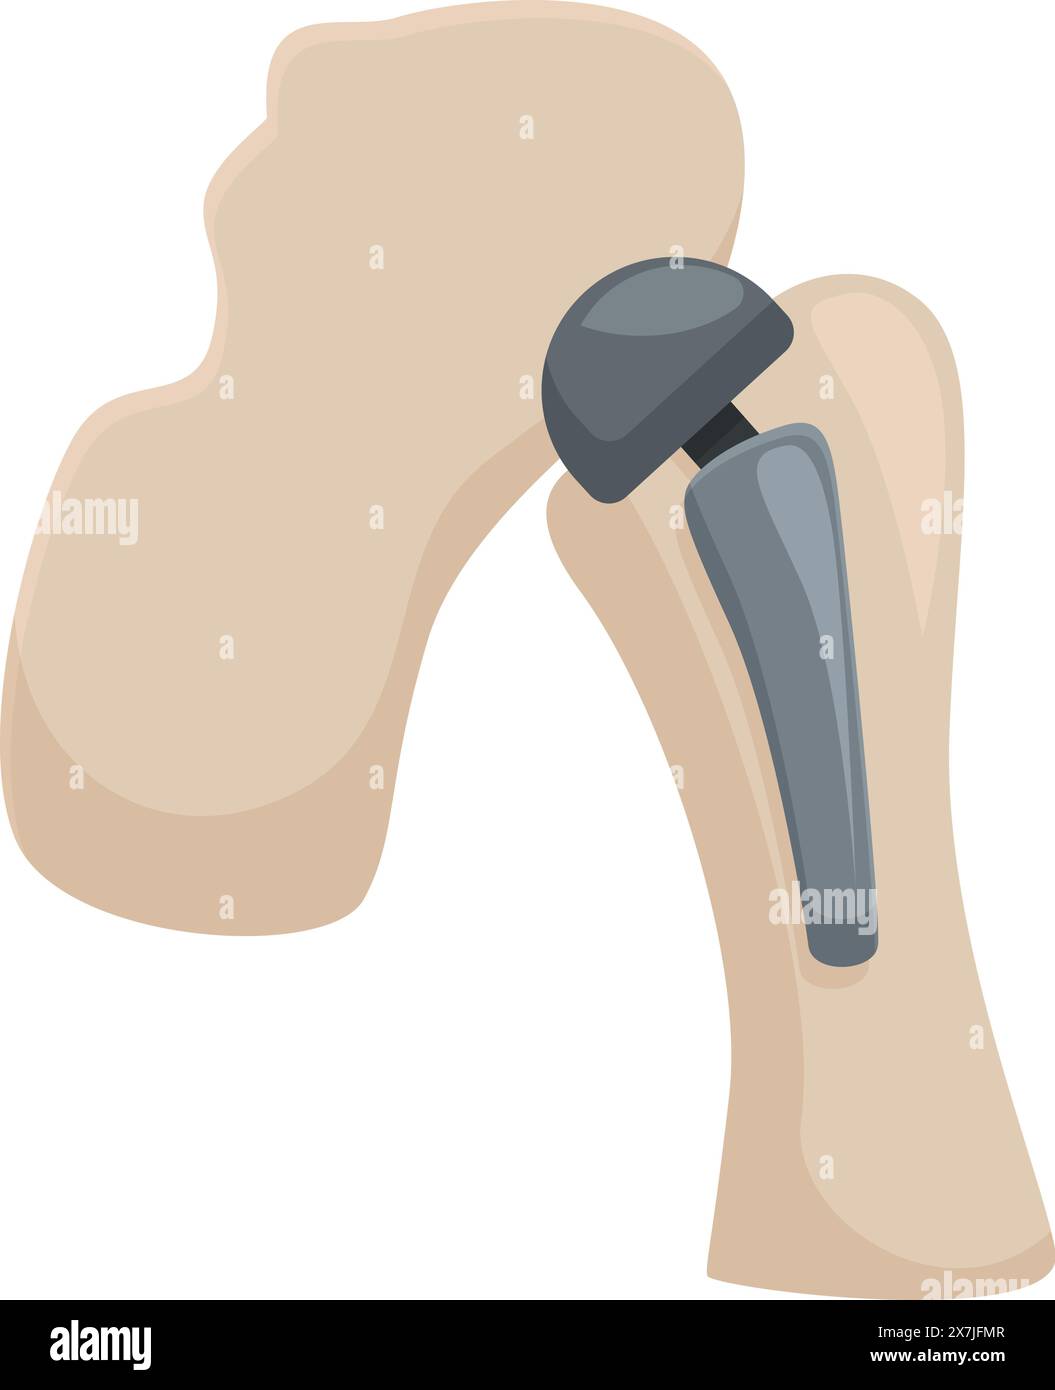 Grafica vettoriale di una sostituzione articolare dell'anca, che mostra un impianto protesico medico Illustrazione Vettoriale